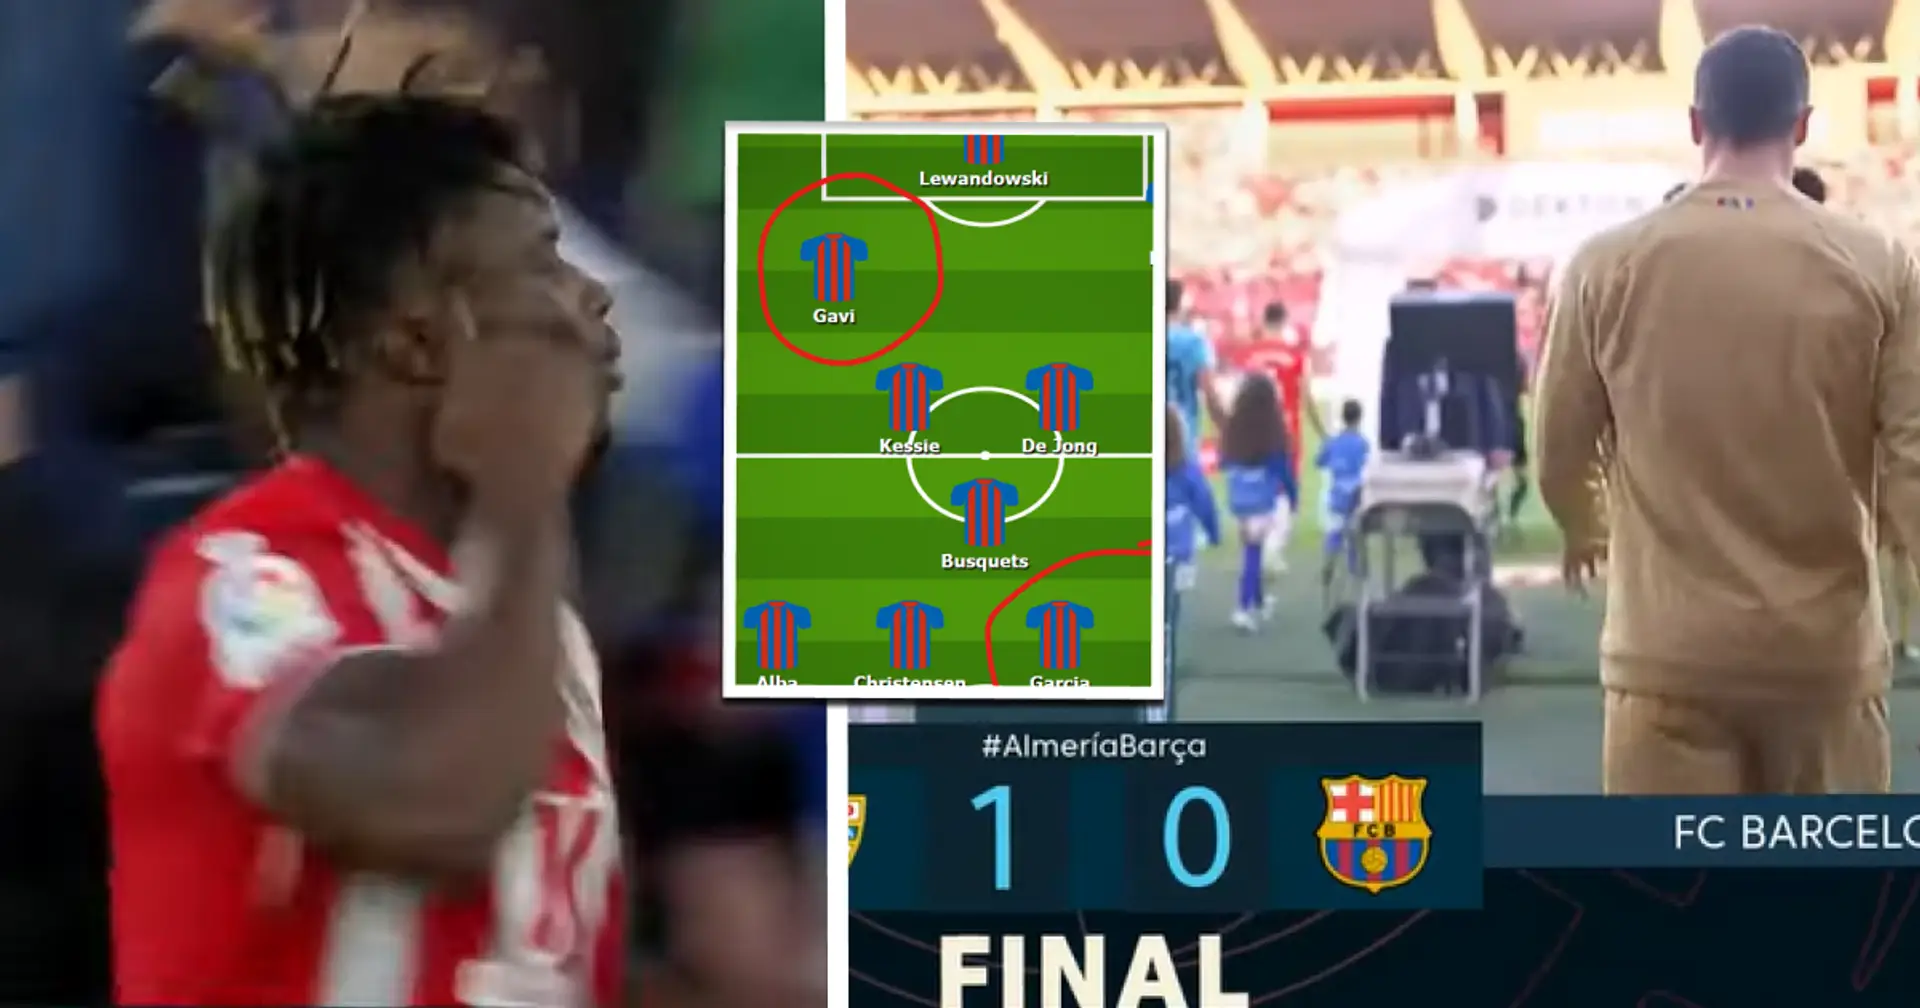 La plus grande faiblesse de Barcelone dans la défaite d'Almeria montrée dans l'alignement